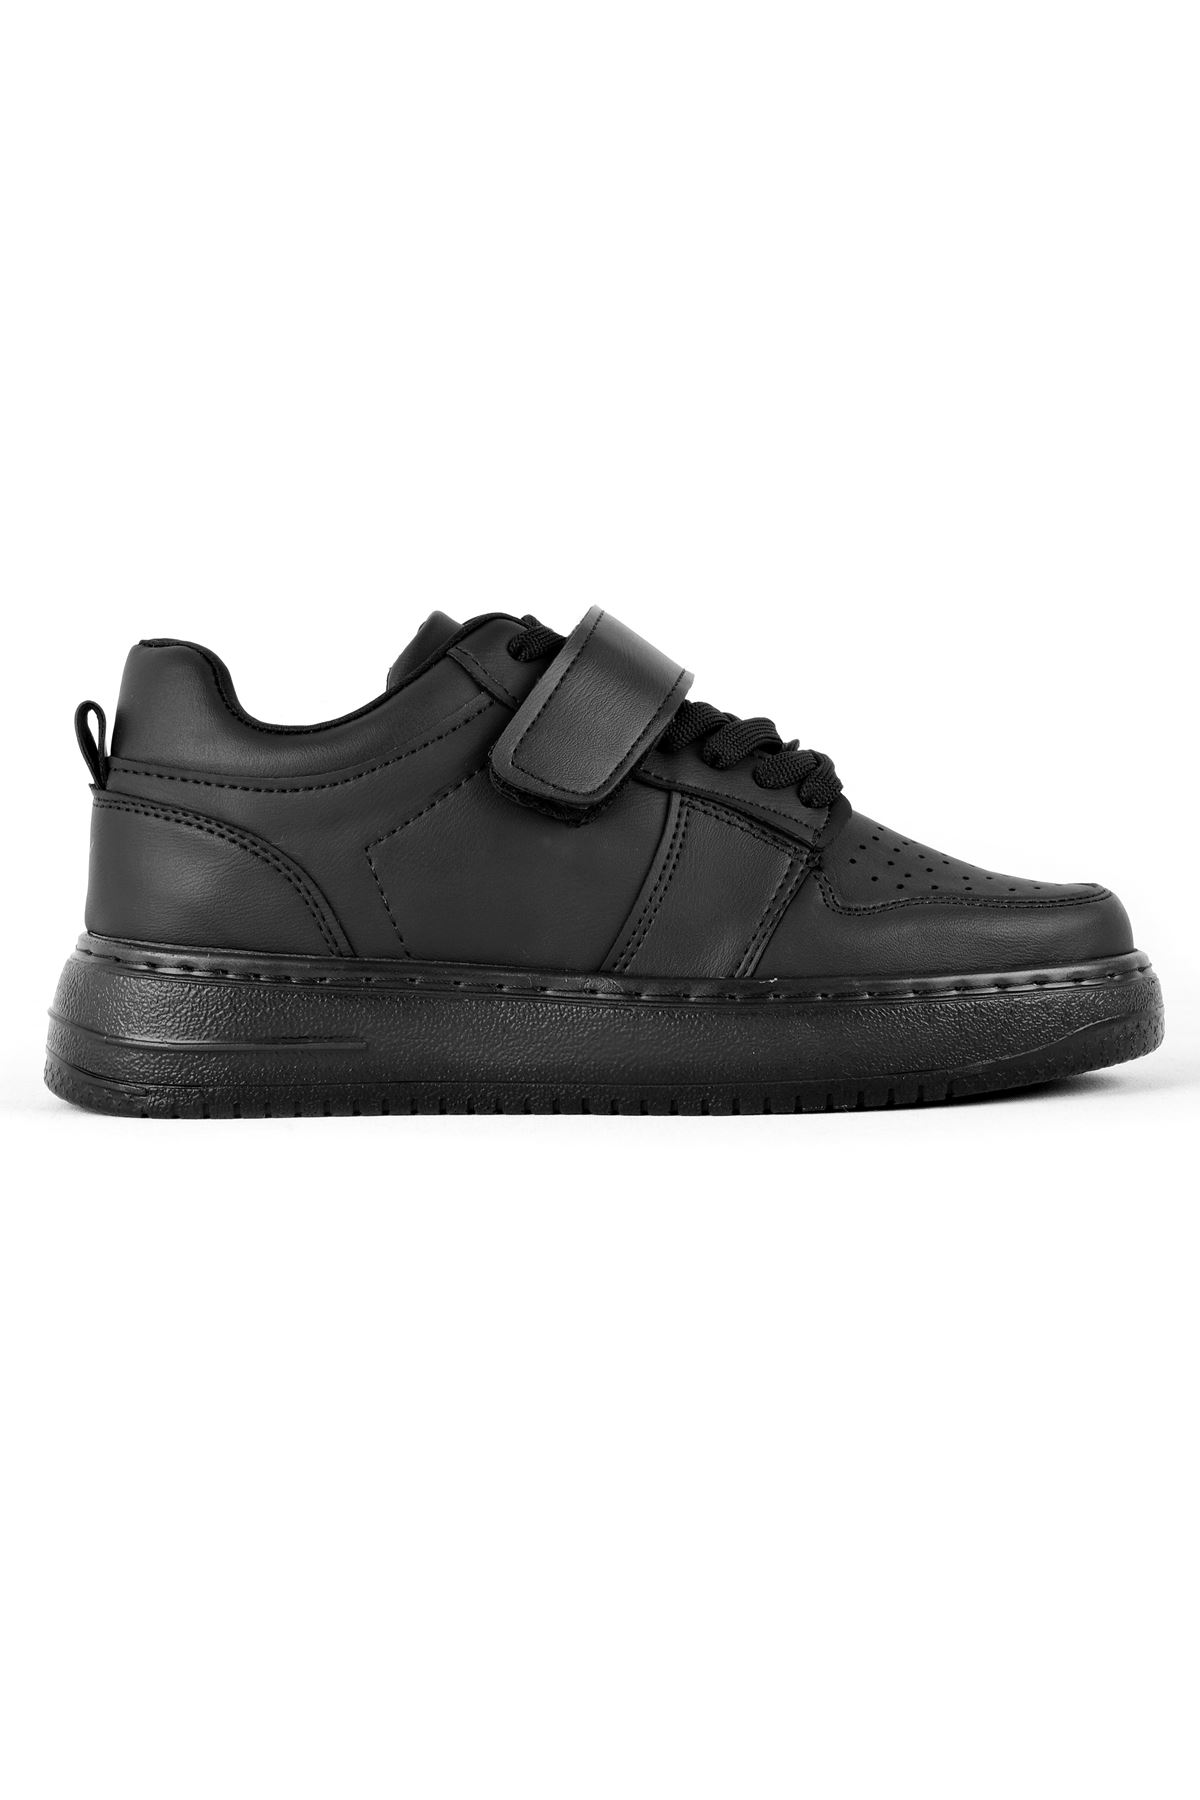 Crocus Kadın Spor Ayakkabı Bant Detaylı-siyah